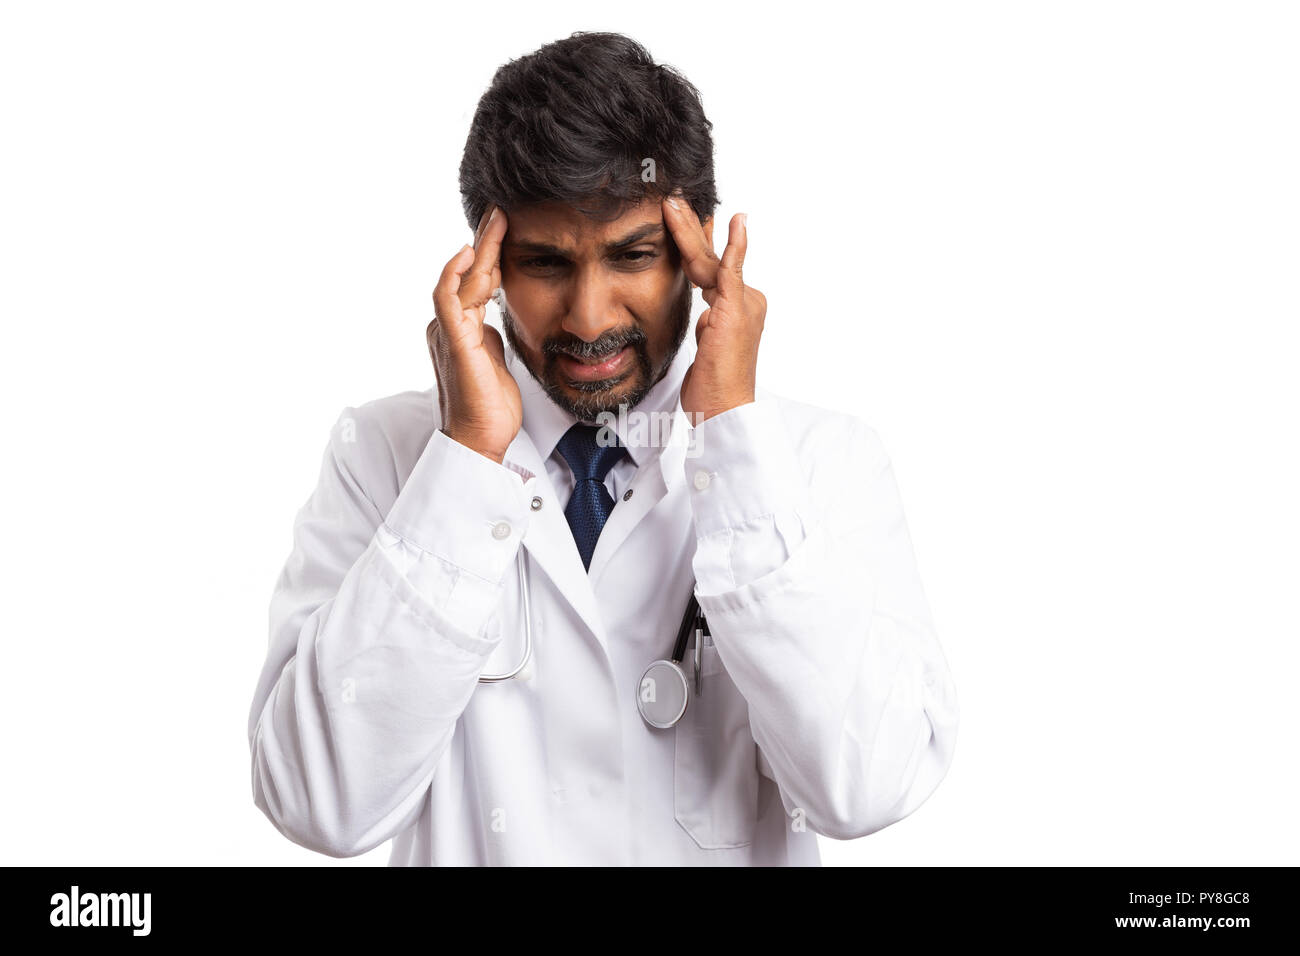 Medico indiano toccando la fronte con le dita come doloroso mal di testa gesto isolato su sfondo bianco Foto Stock